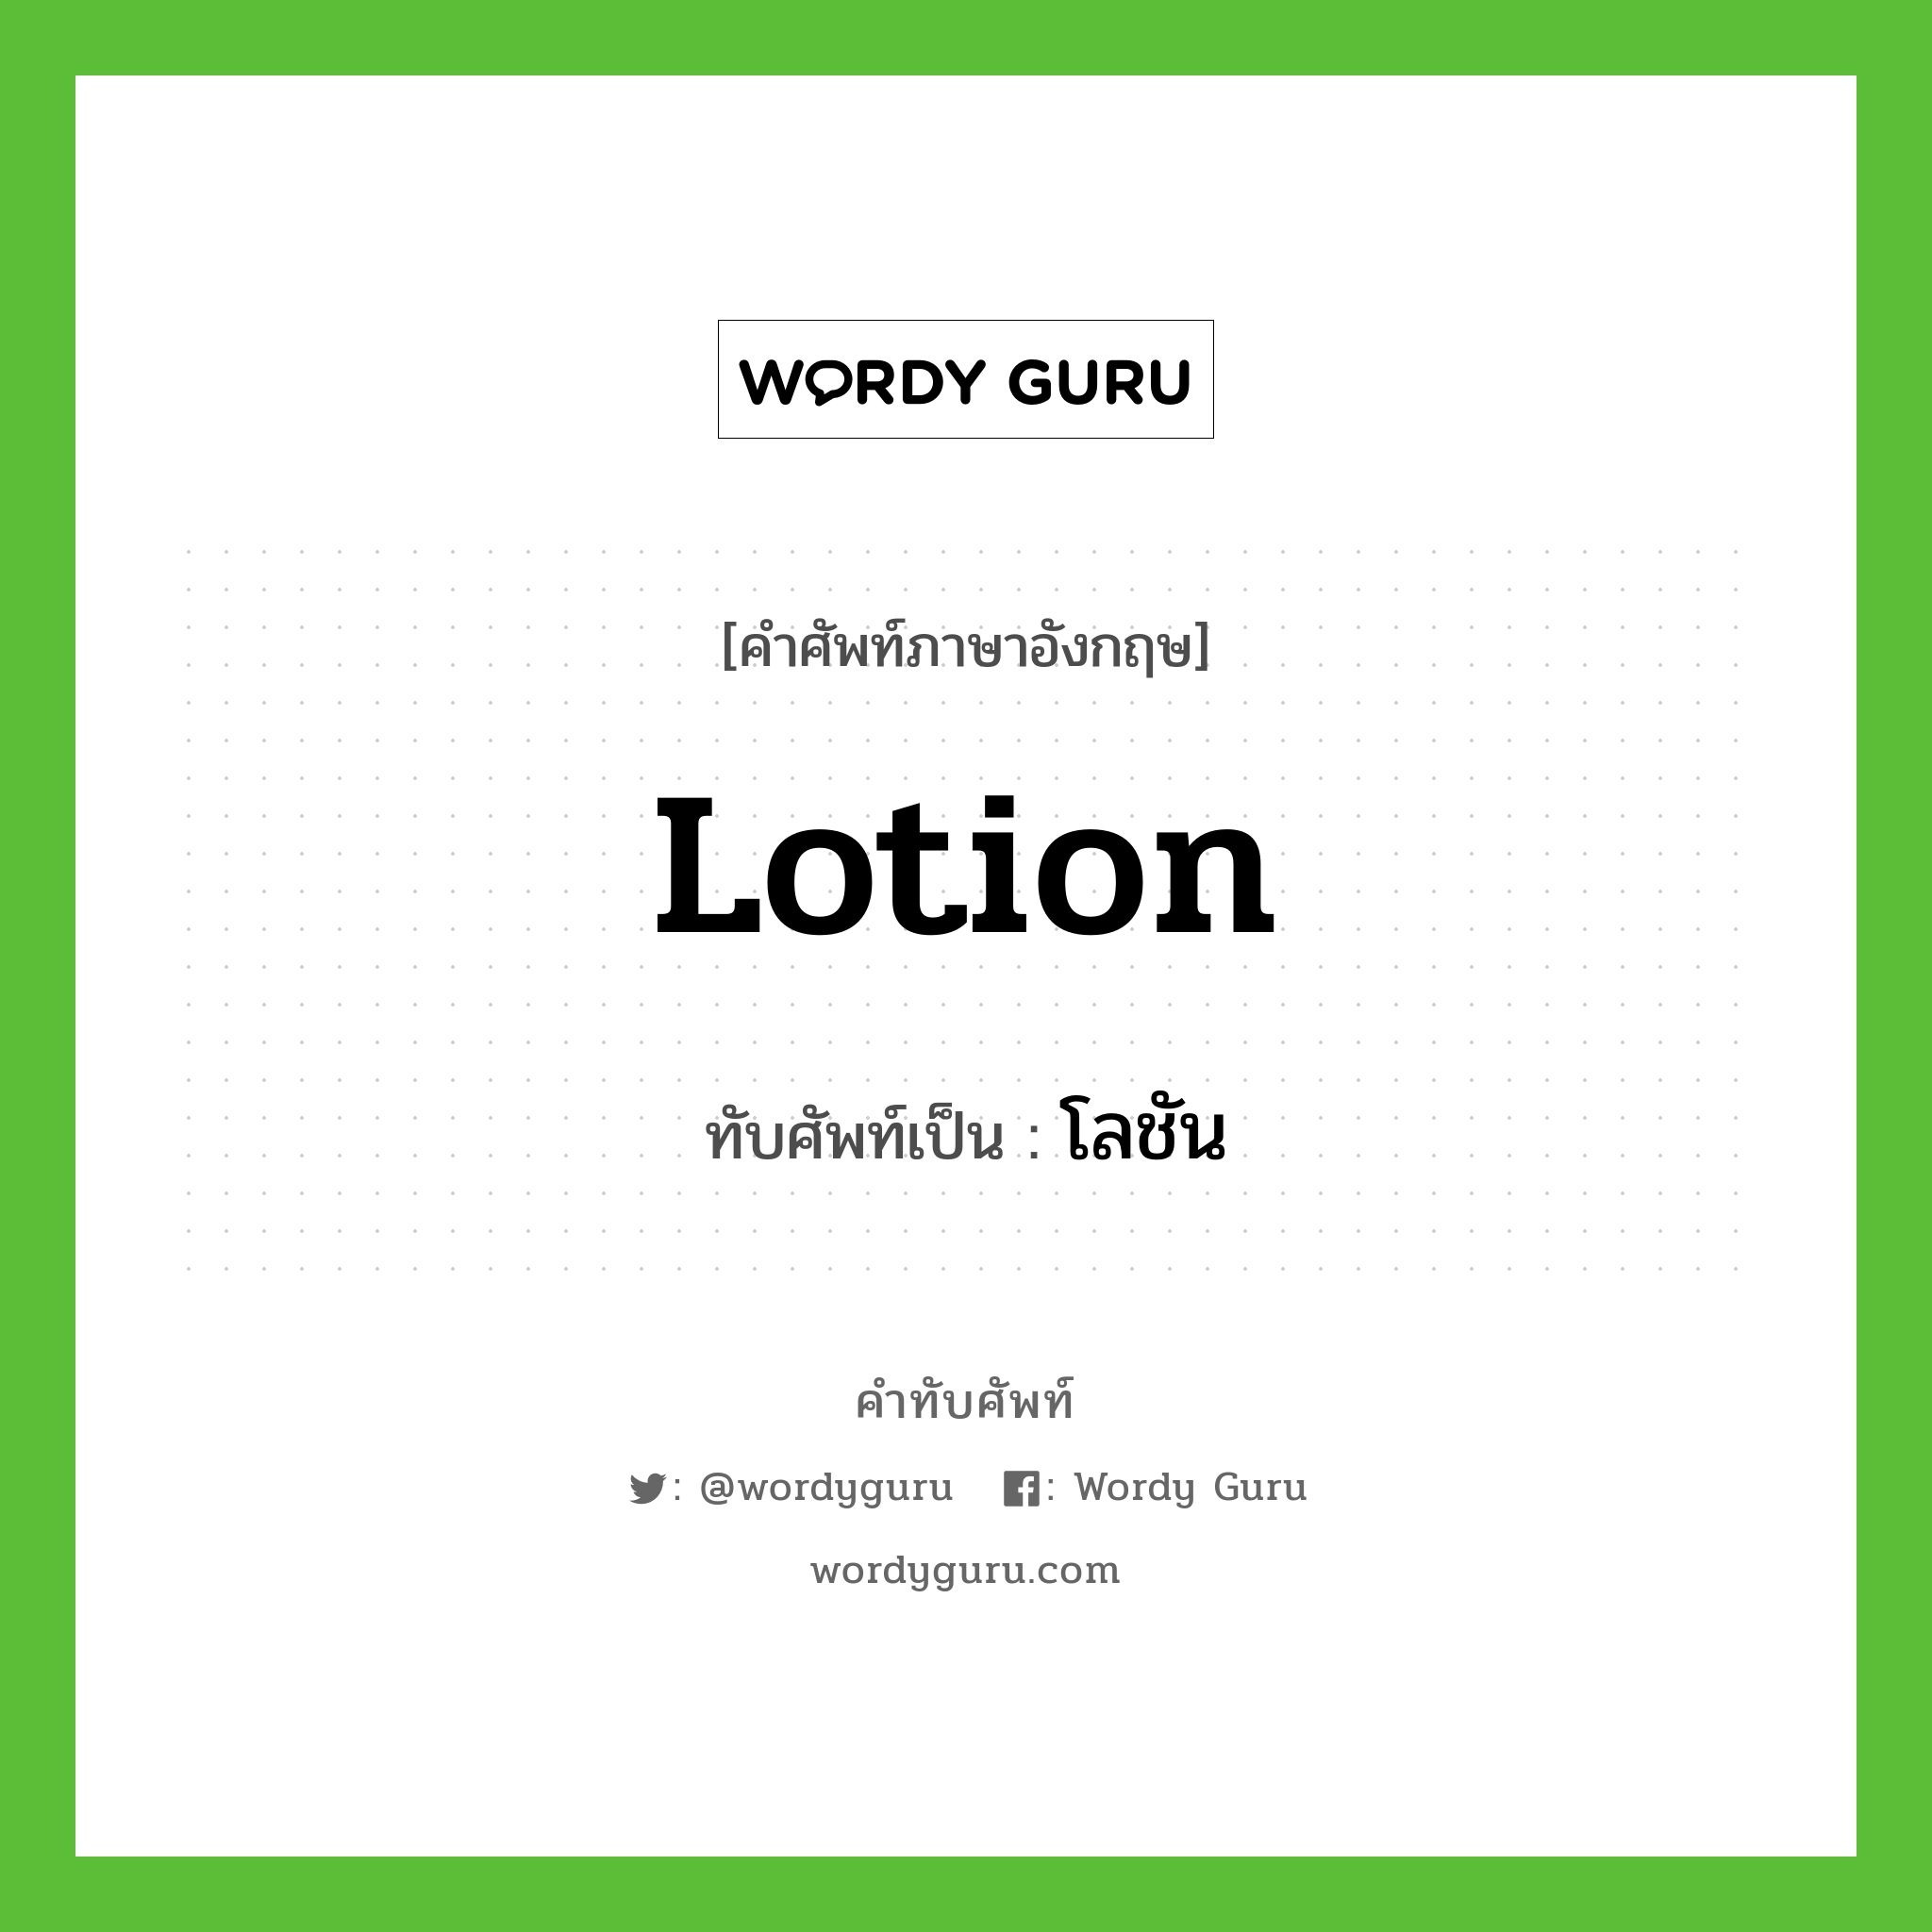 lotion เขียนเป็นคำไทยว่าอะไร?, คำศัพท์ภาษาอังกฤษ lotion ทับศัพท์เป็น โลชัน